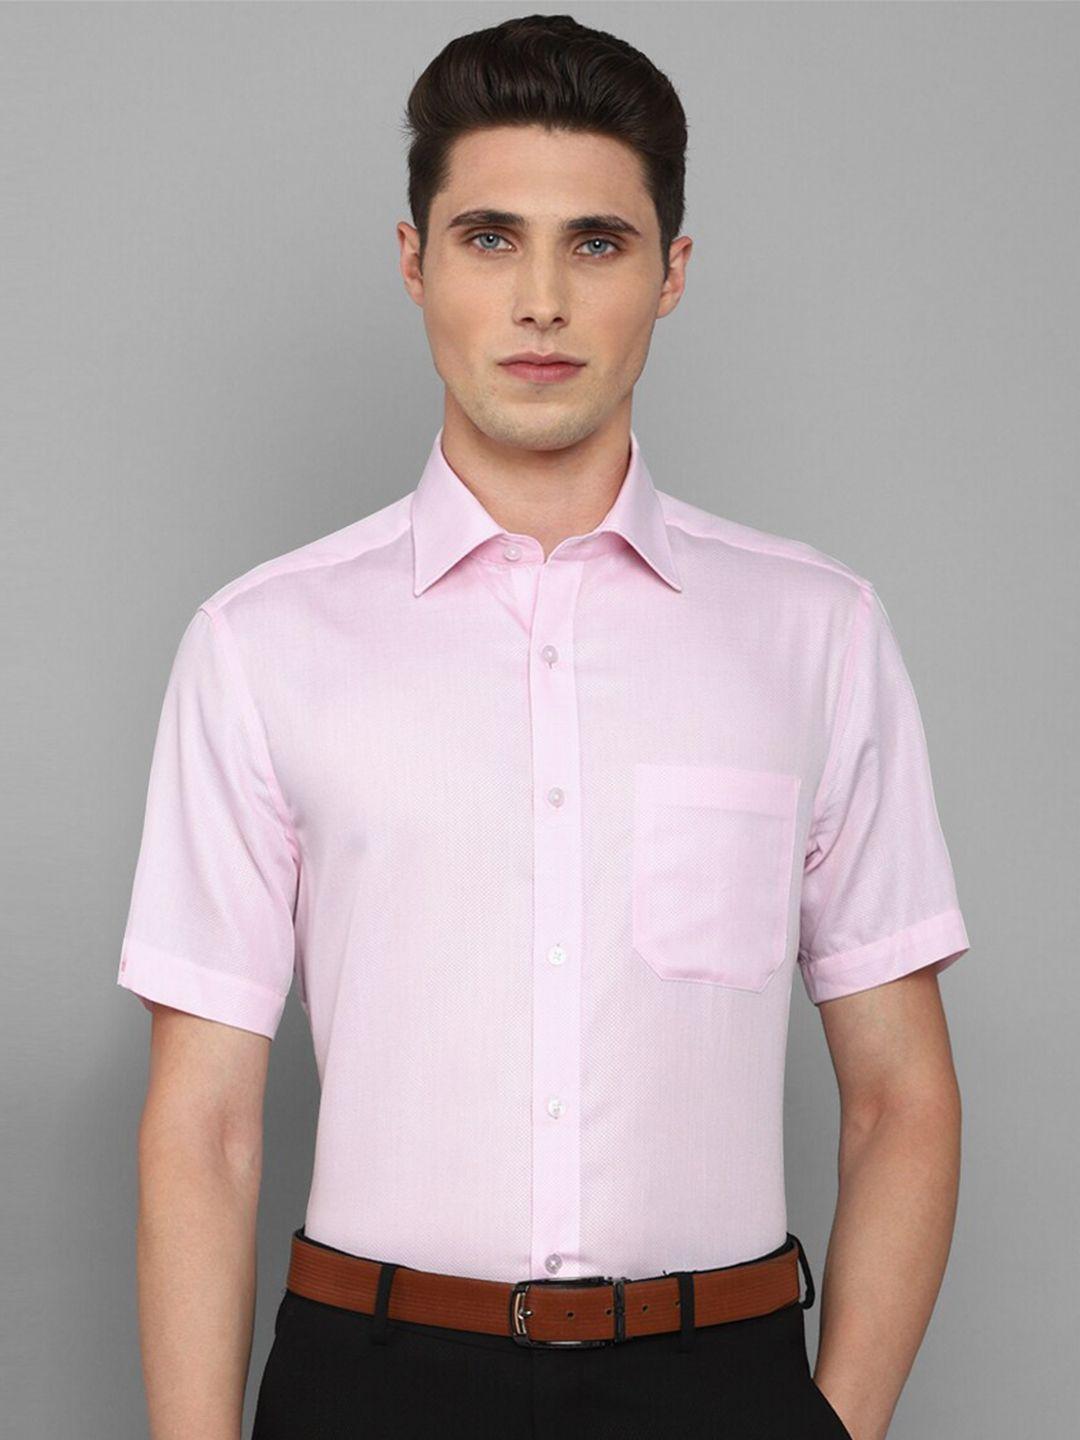 louis-philippe-men-slim-fit-cotton-formal-shirt